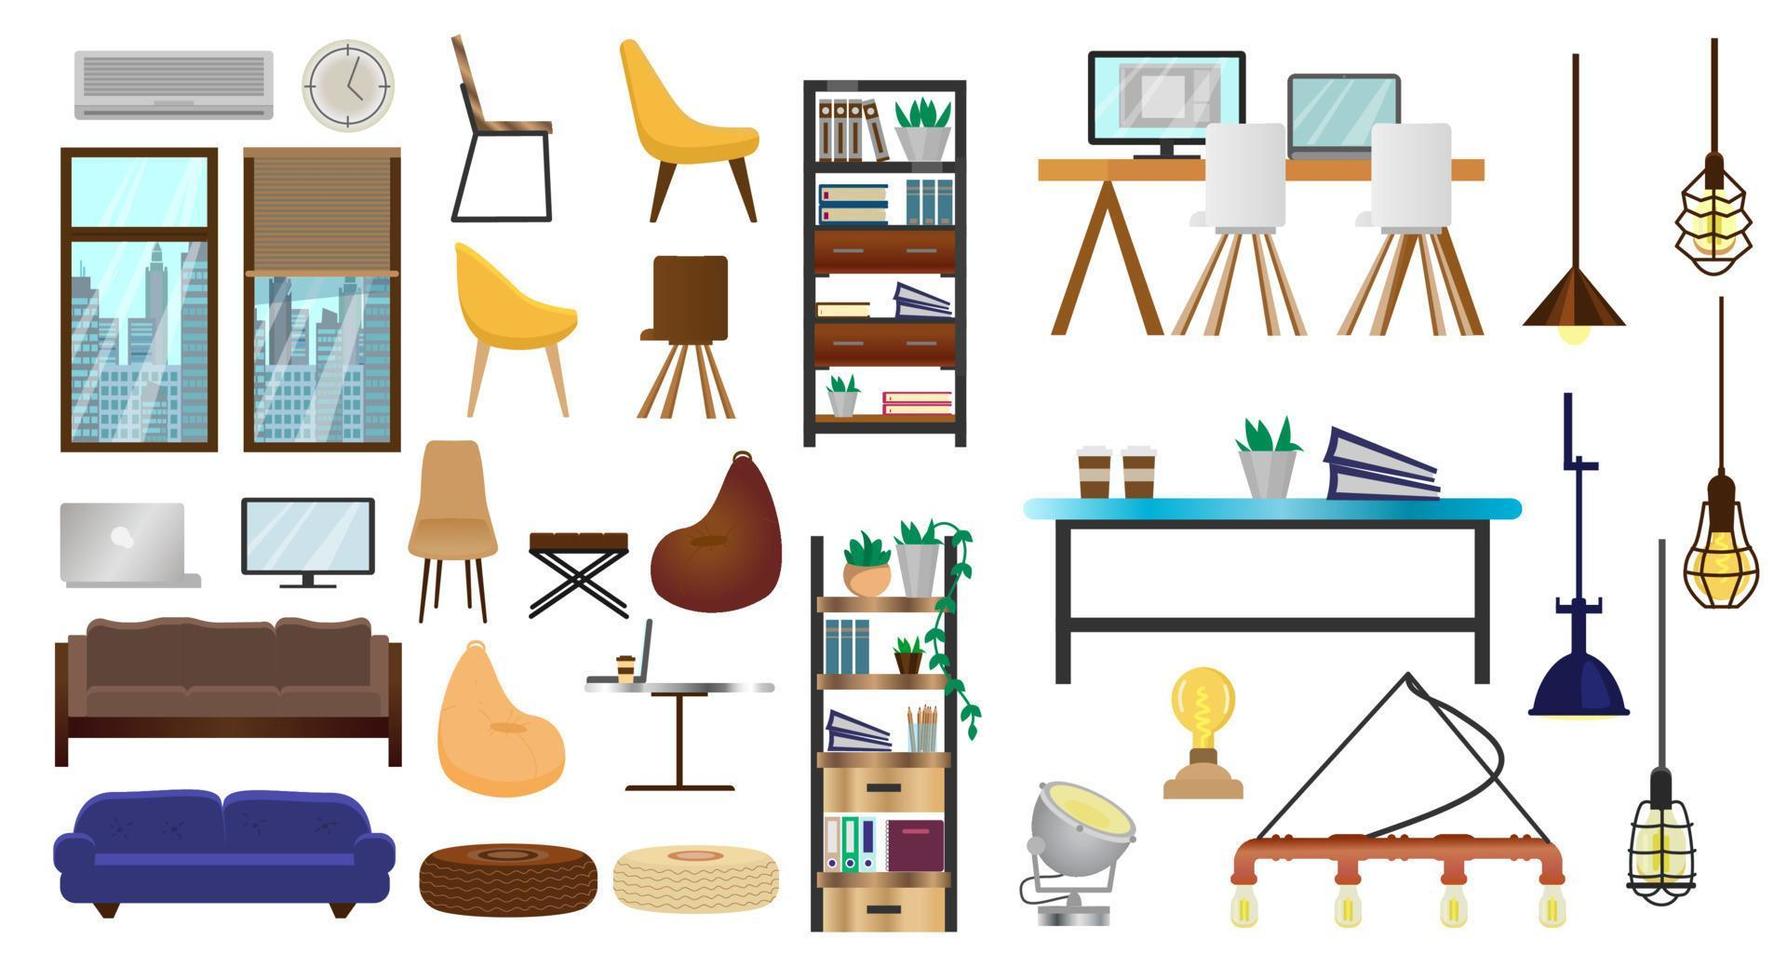 vector set meubels voor creatieve loft interieur, coworking of open ruimte. moderne lampen, kasten met boeken en mappen, stoelen, tafels, banken, ramen met stadsgezicht. plat ontwerp.